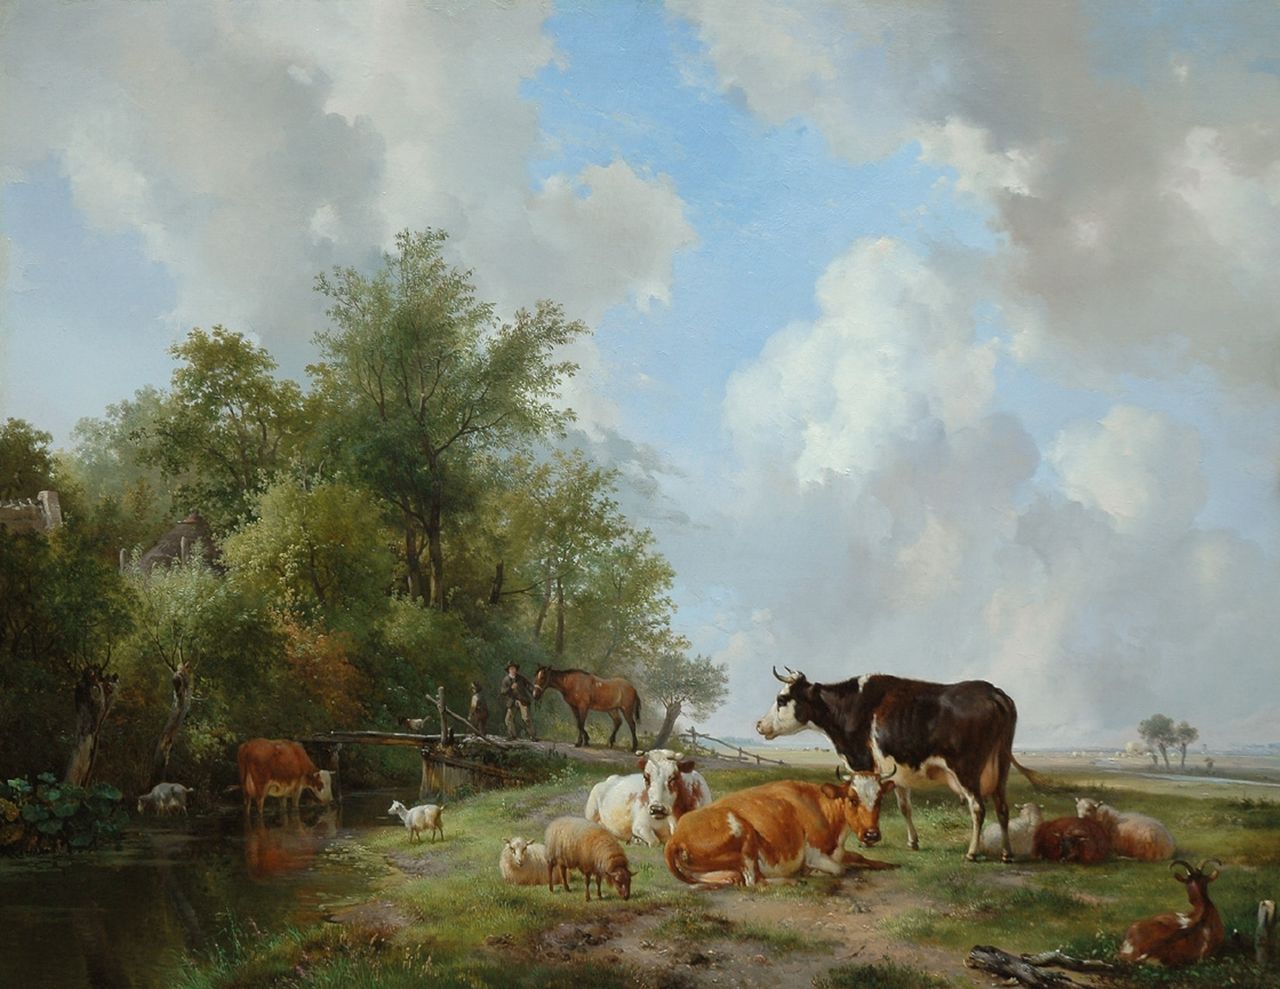 Sande Bakhuyzen H. van de | Hendrikus van de Sande Bakhuyzen, Vee aan de rand van een bos in een weids landschap, olieverf op paneel 59,9 x 77,8 cm, gesigneerd rechtsonder en gedateerd 1838